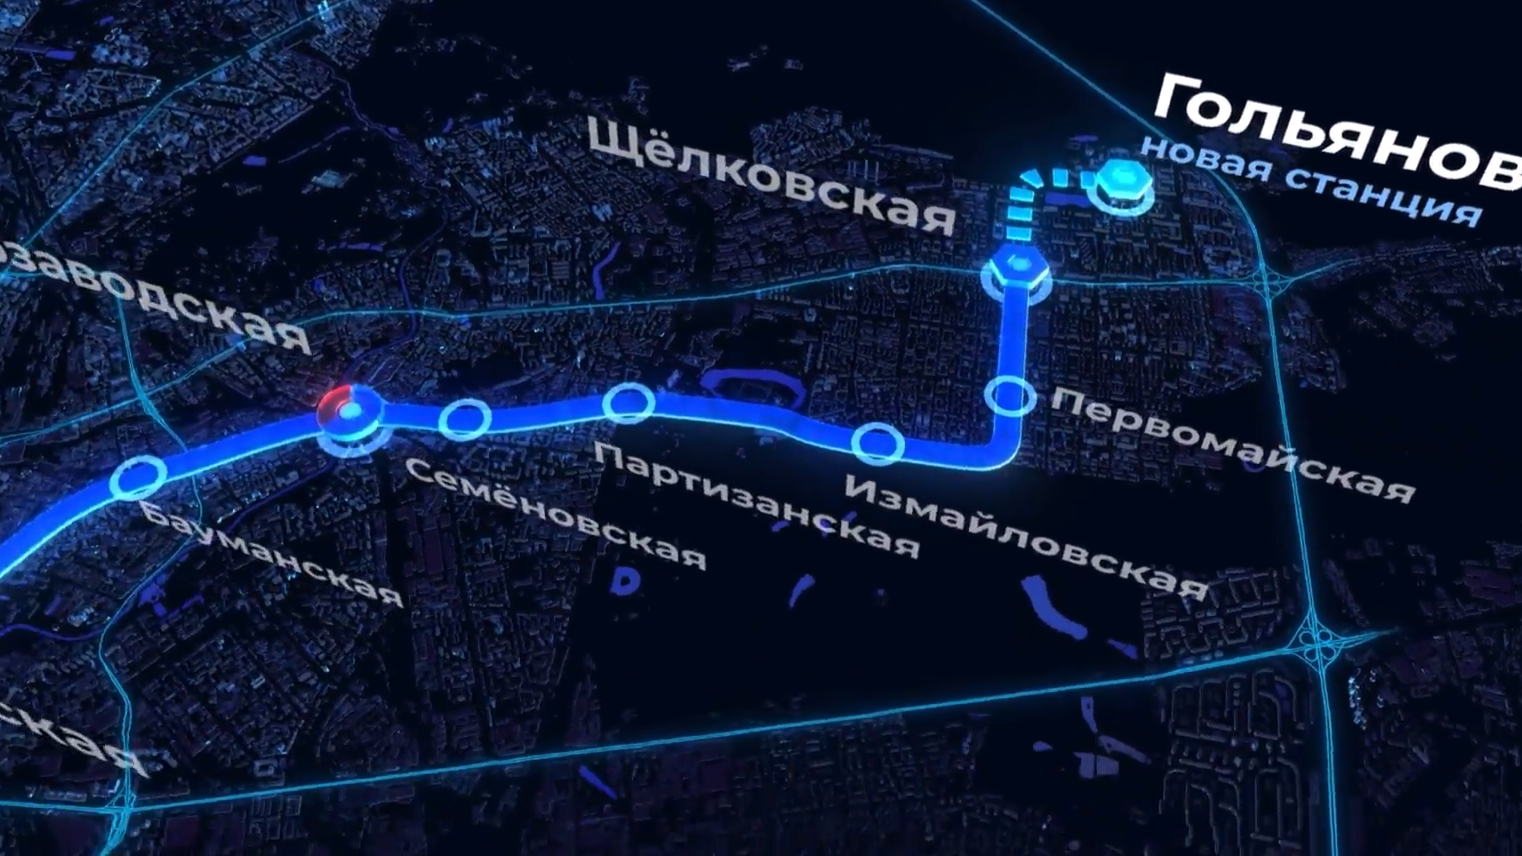 Мэр Москвы рассказал, какой будет новая станция метро «Гольяново»